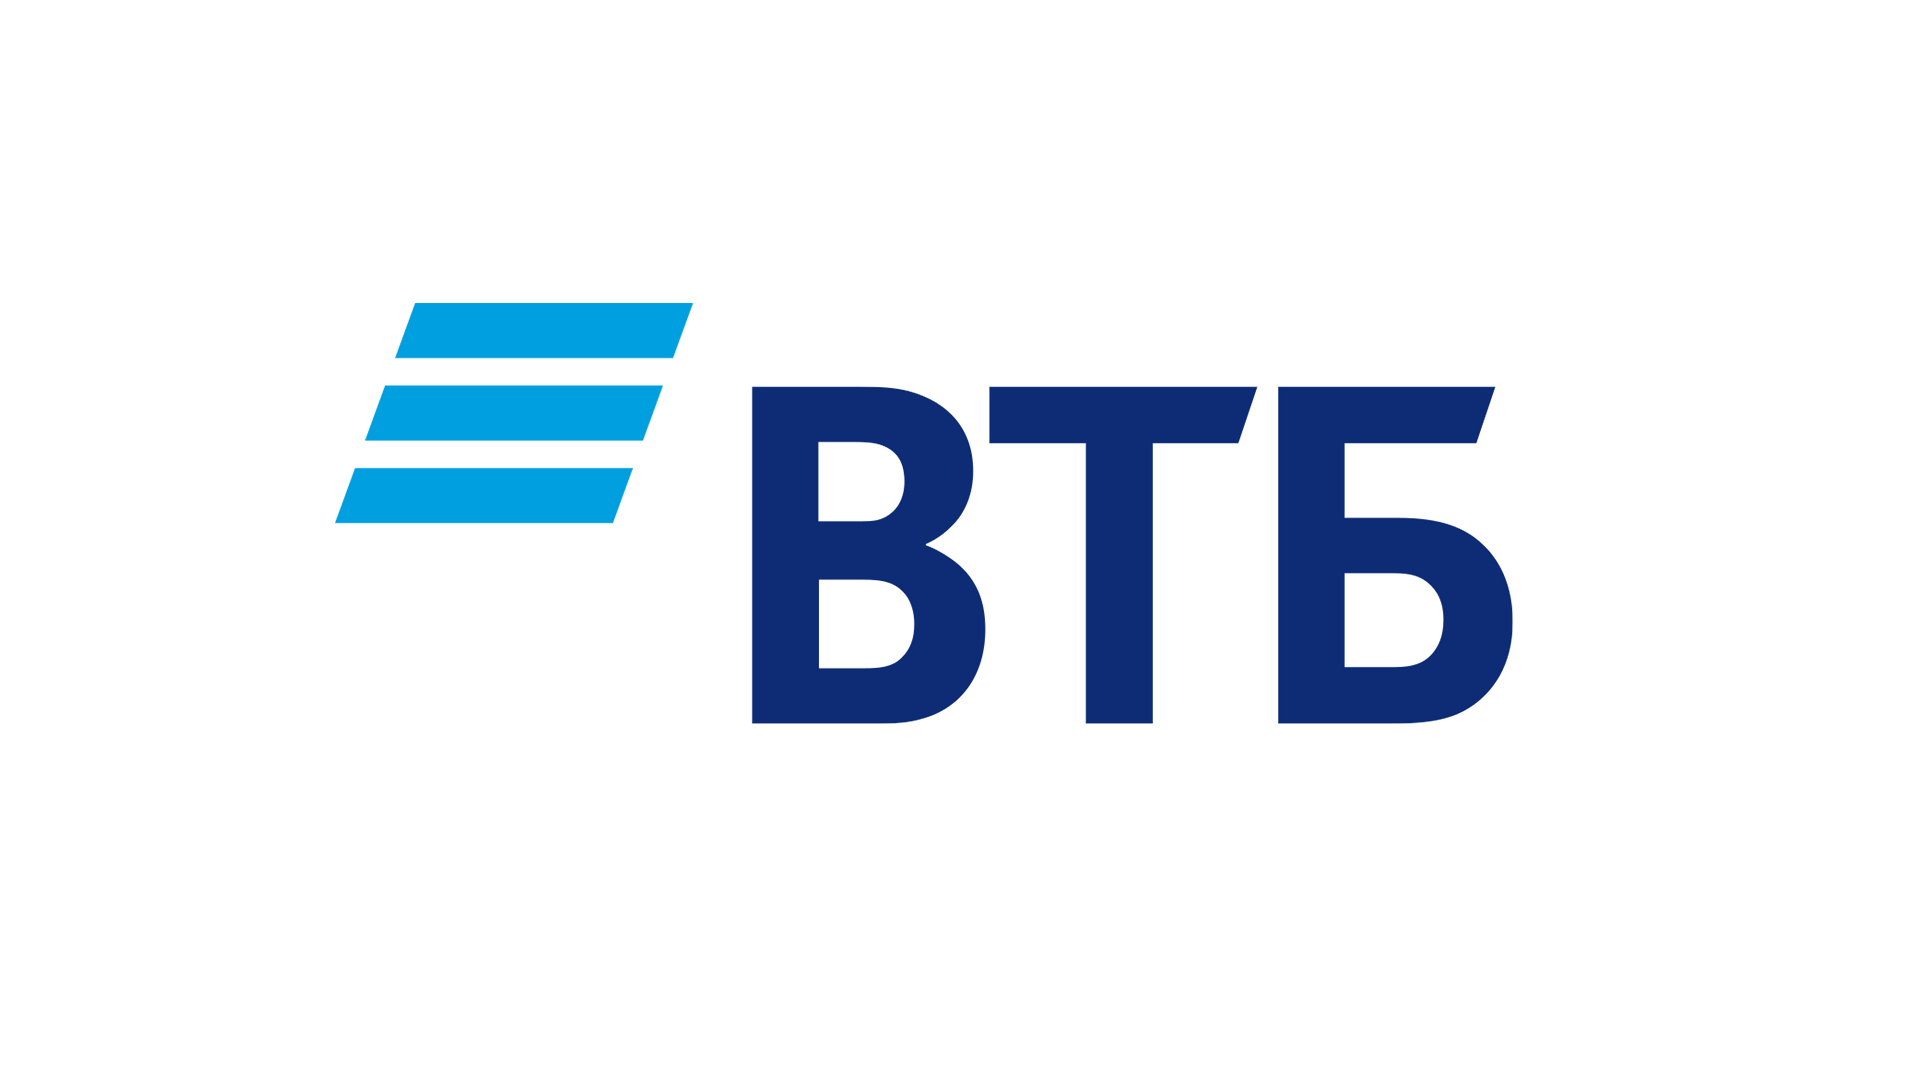 ВТБ запускает оплату по QR-коду через СБП в интернет-банке